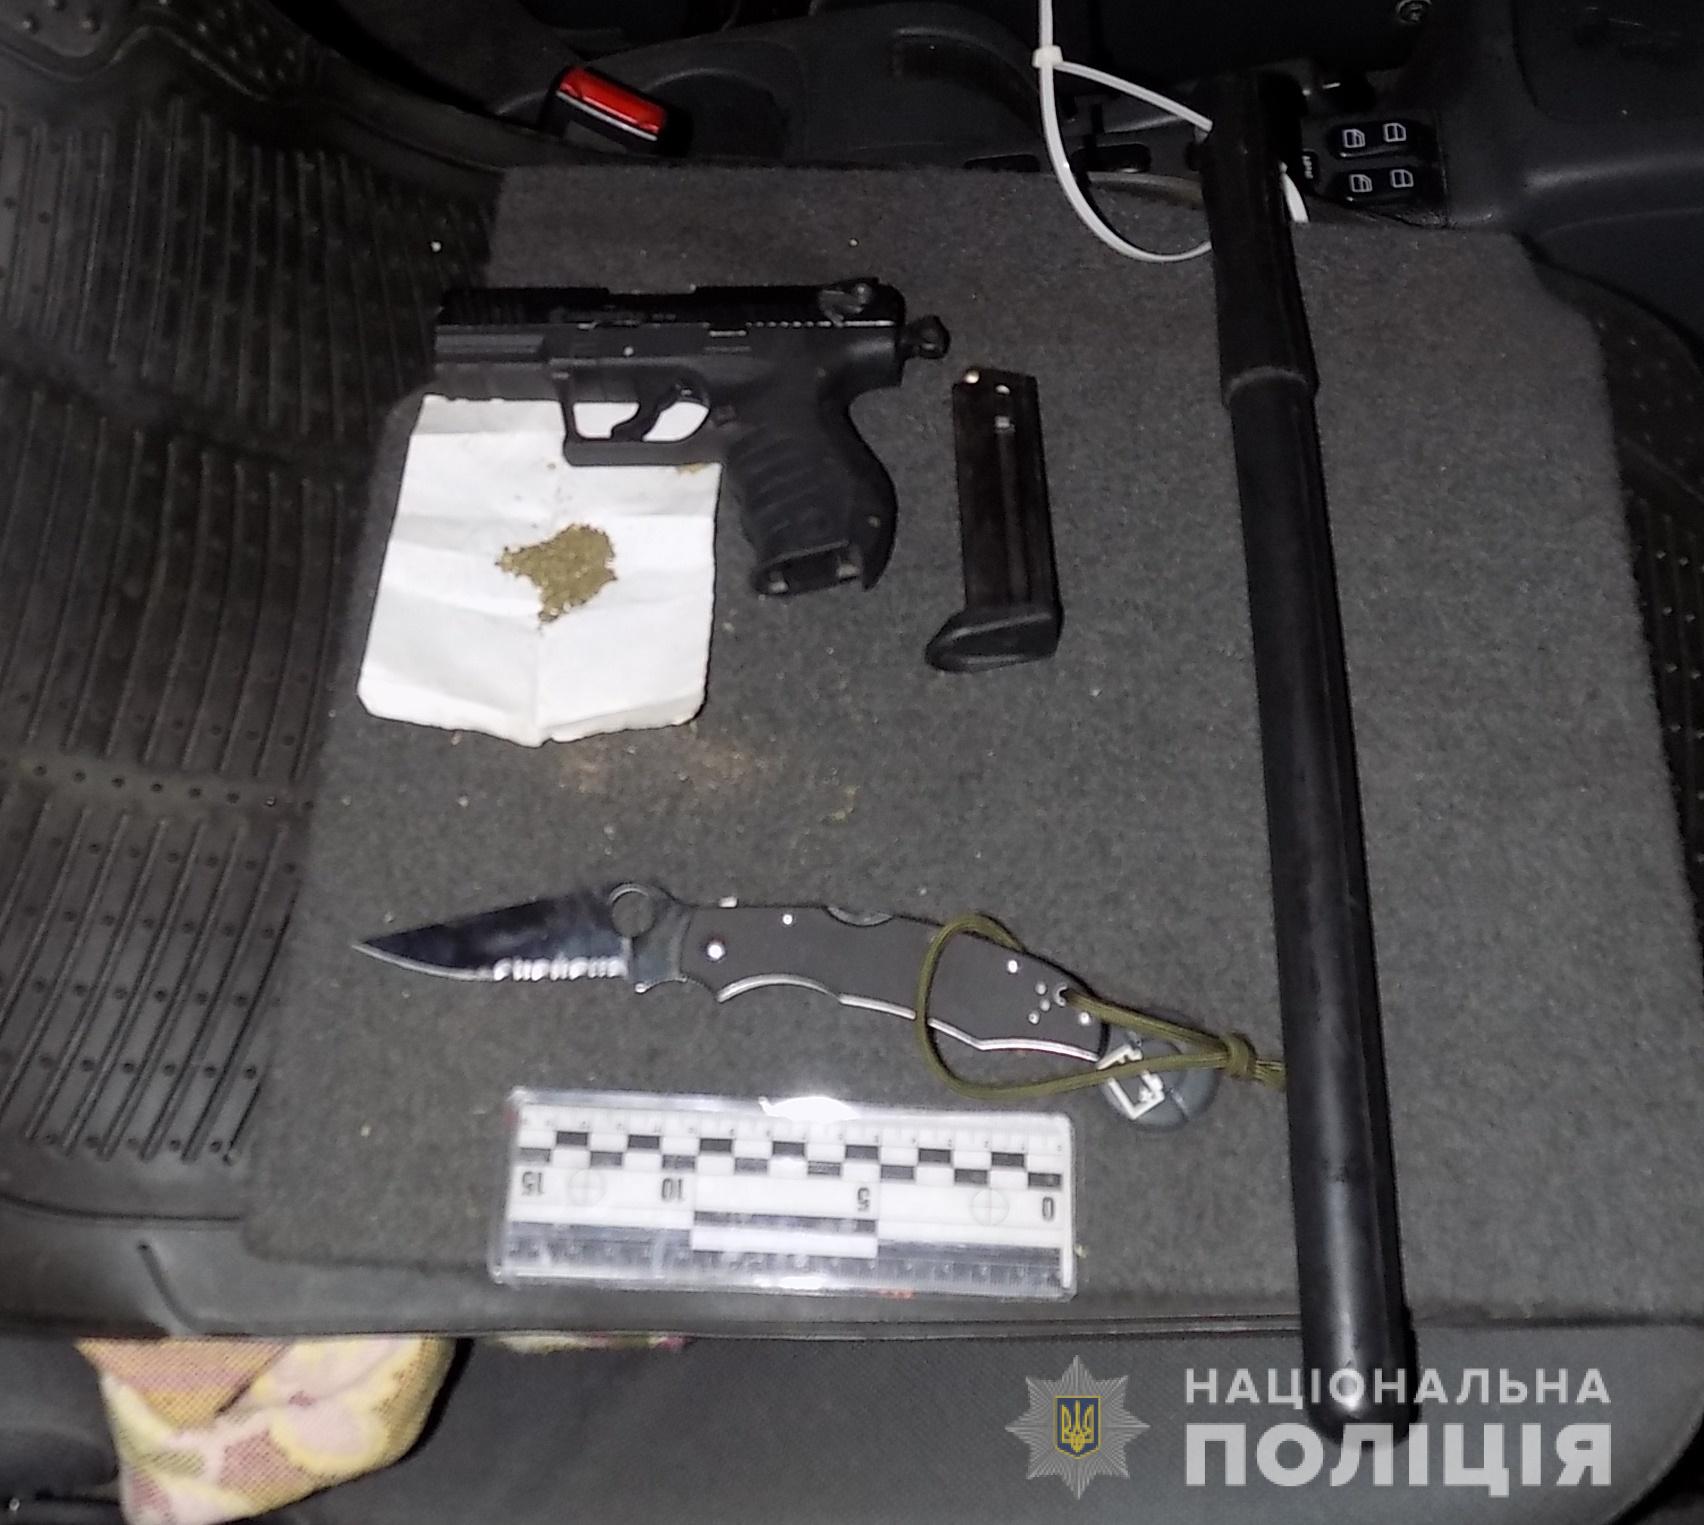 В Одесской области задержали мужчину, перевозившего оружие и наркотики